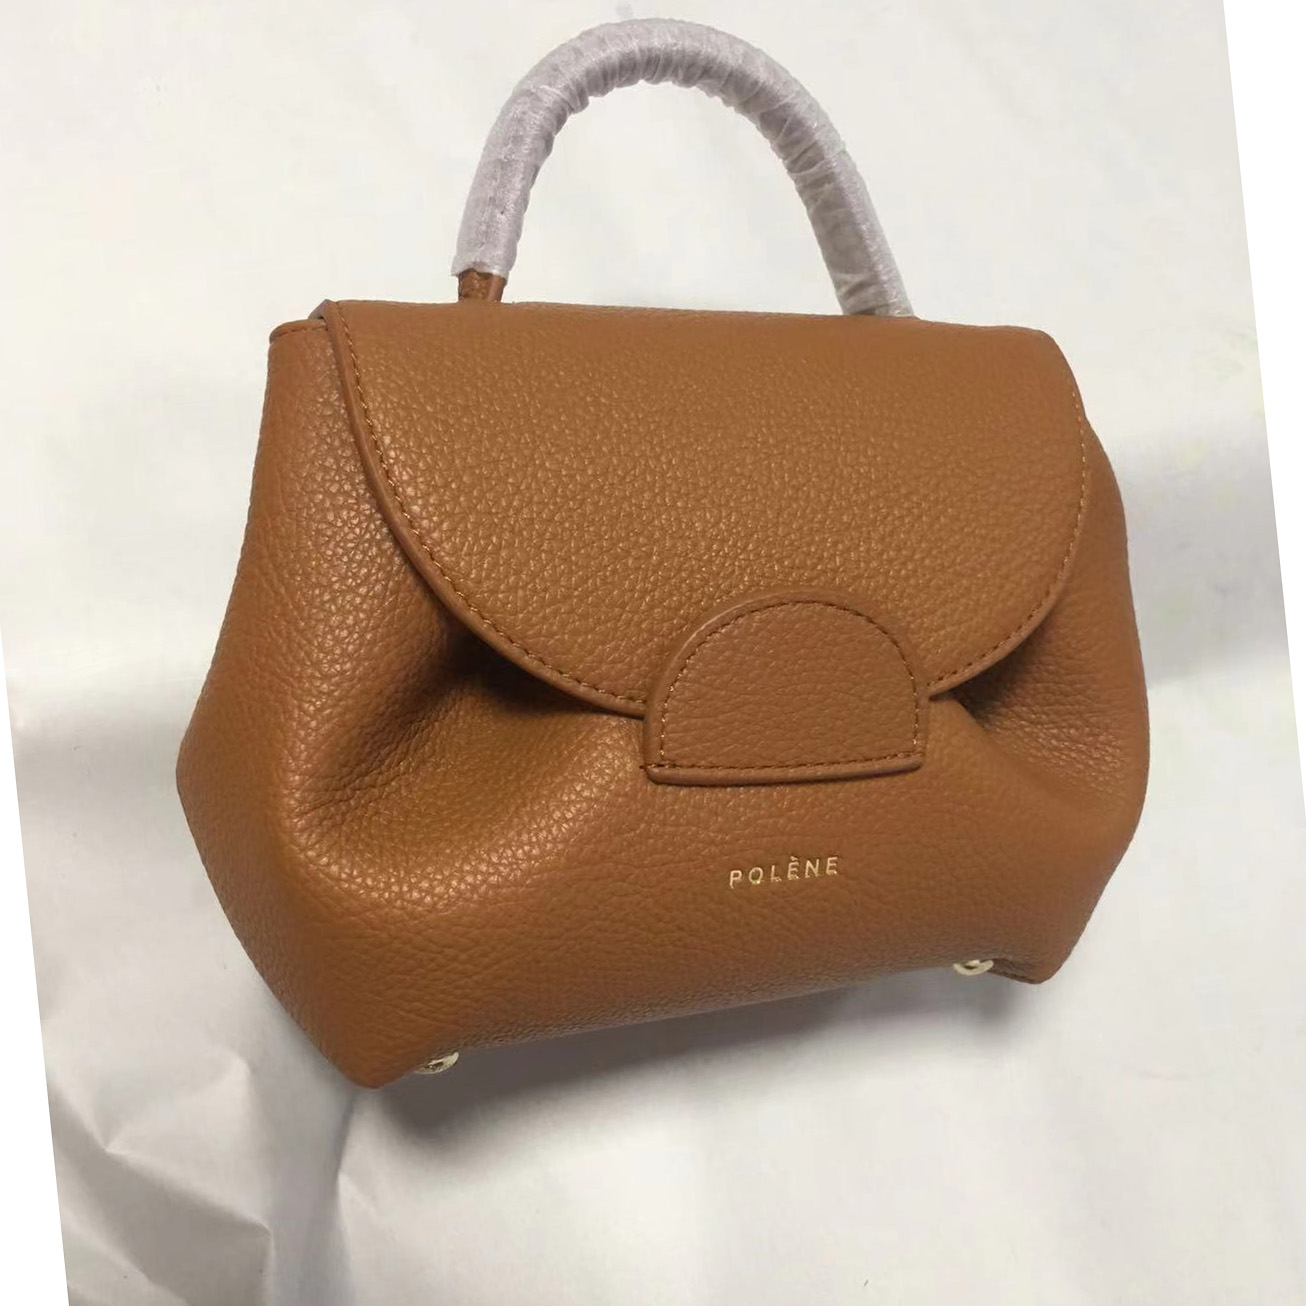 Polene Leather Handbag  - DesignerGu